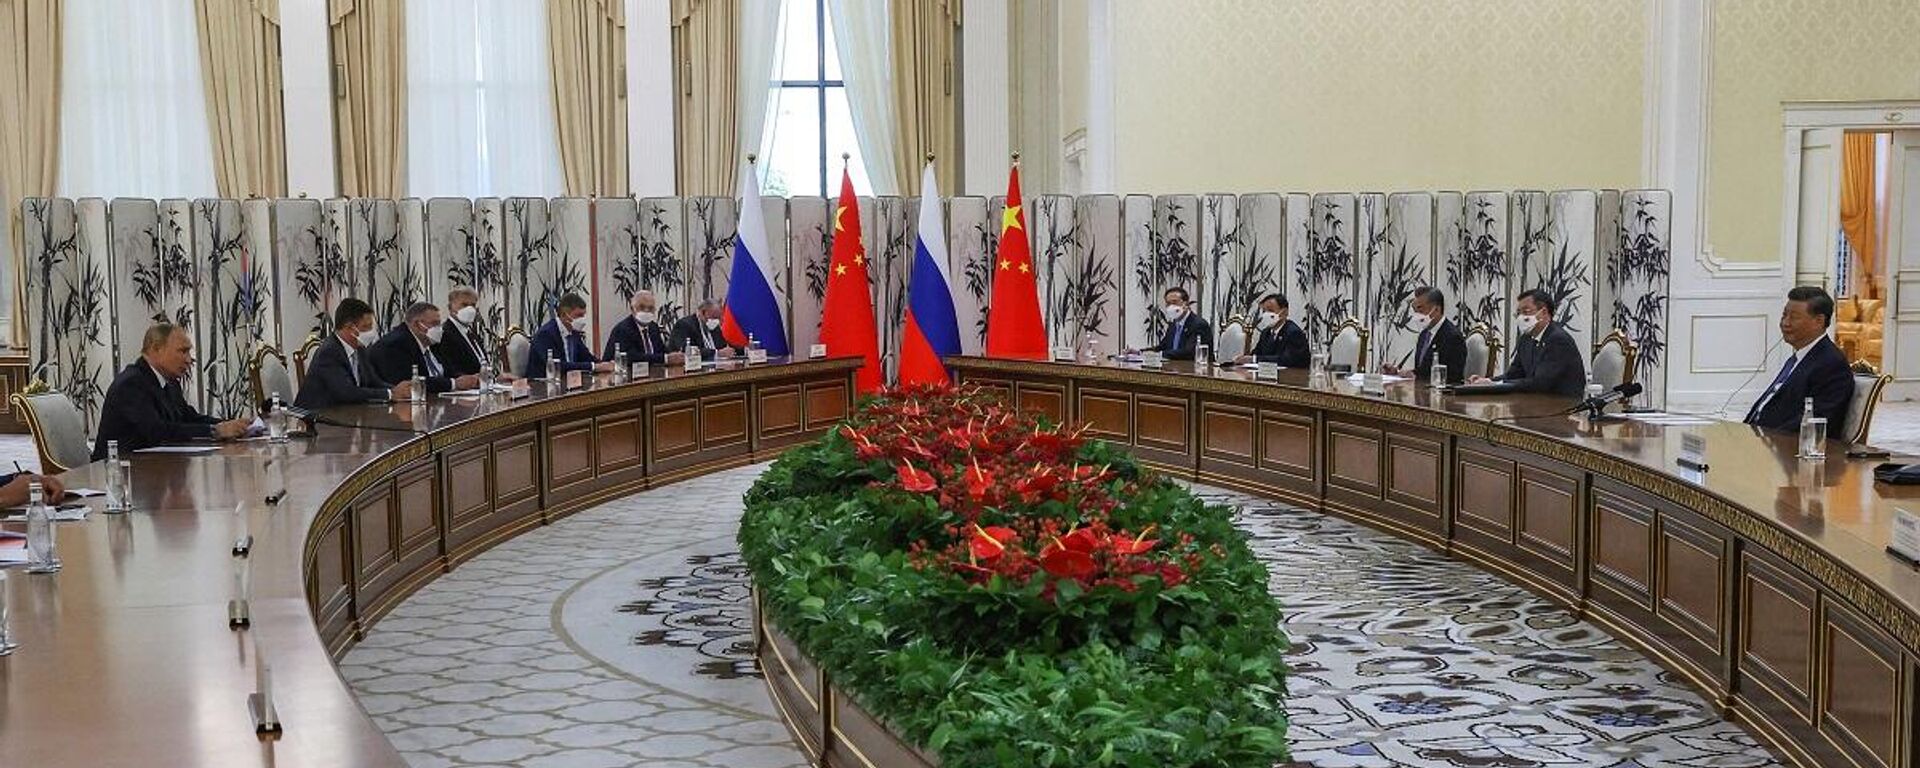 Rusya Devlet Başkanı Vladimir Putin, Çinli mevkidaşı Şi Cinping ile şubat ayındaki buluşmalarından sonraki ilk görüşmeleri için Semerkant’ta gerçekleştirilen Şanghay İşbirliği Örgütü (ŞİÖ) toplantısı çerçevesinde bir araya geldi. - Sputnik Türkiye, 1920, 15.09.2022